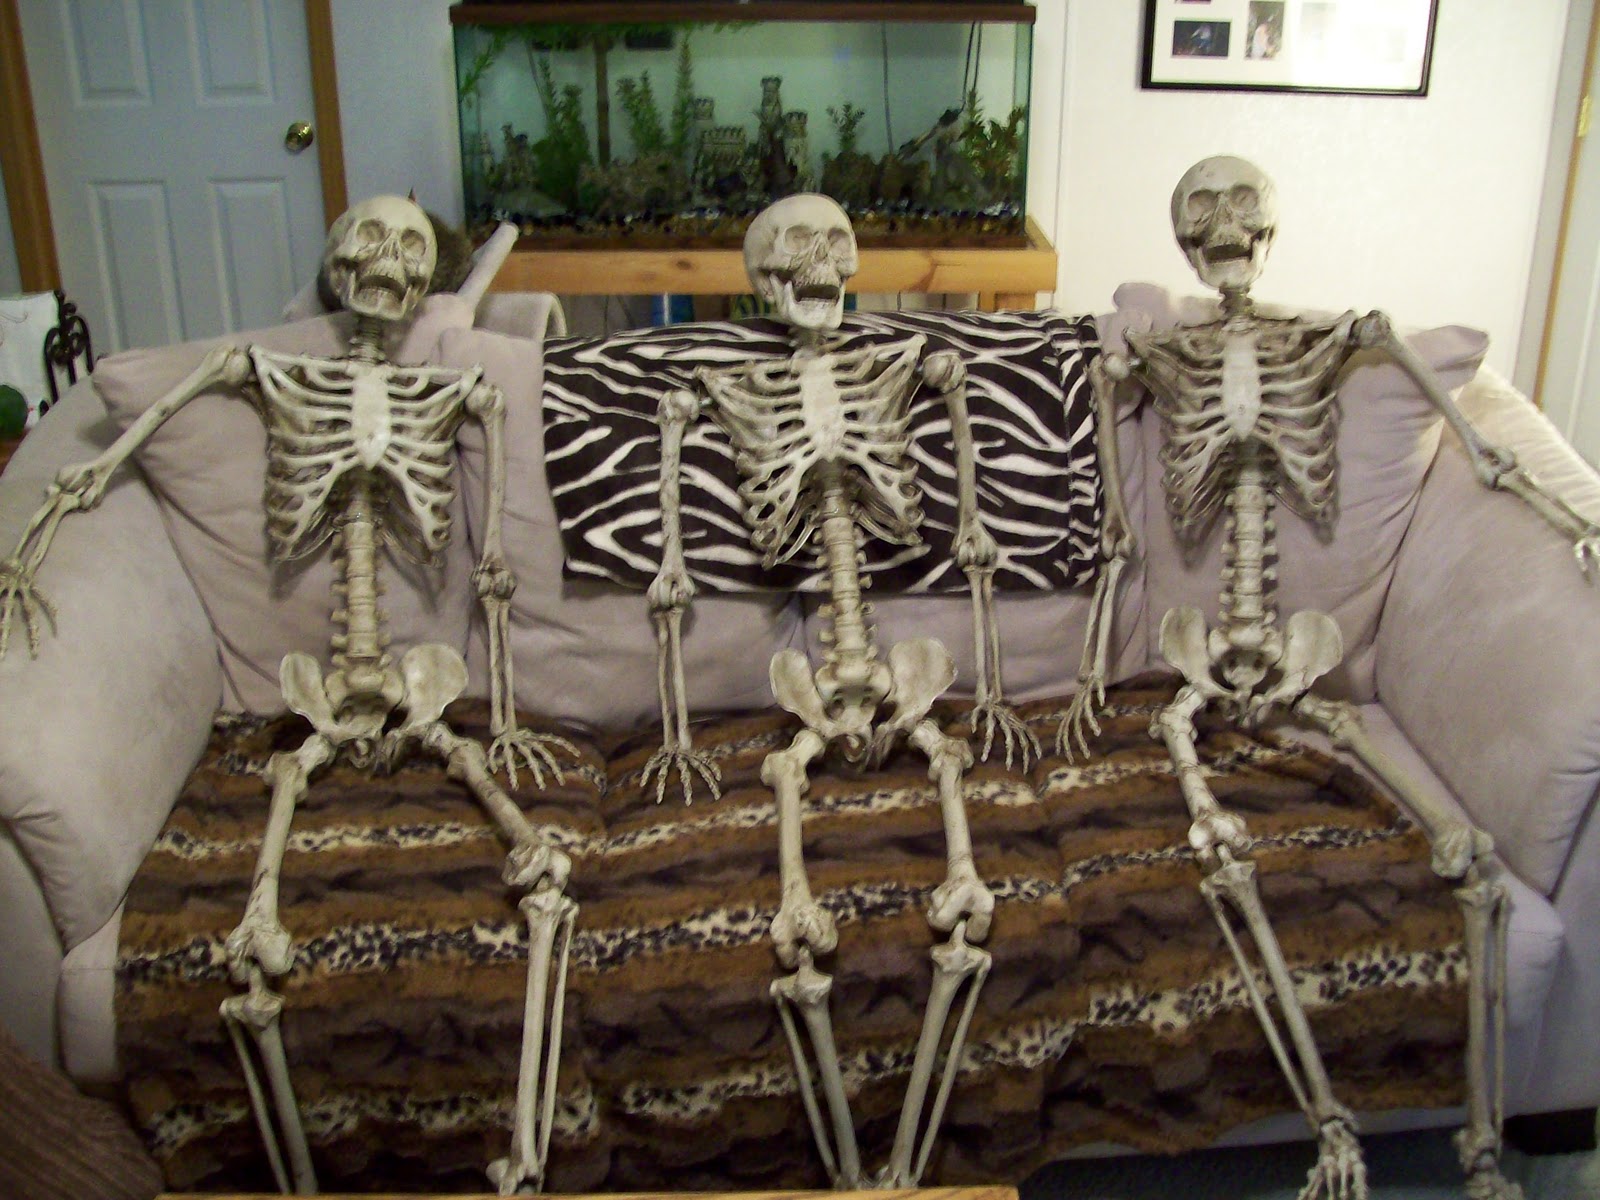 Skeleton Skeletons Bucky Hanging Joke Friends Hold Halloween Gotta Stop Tar...